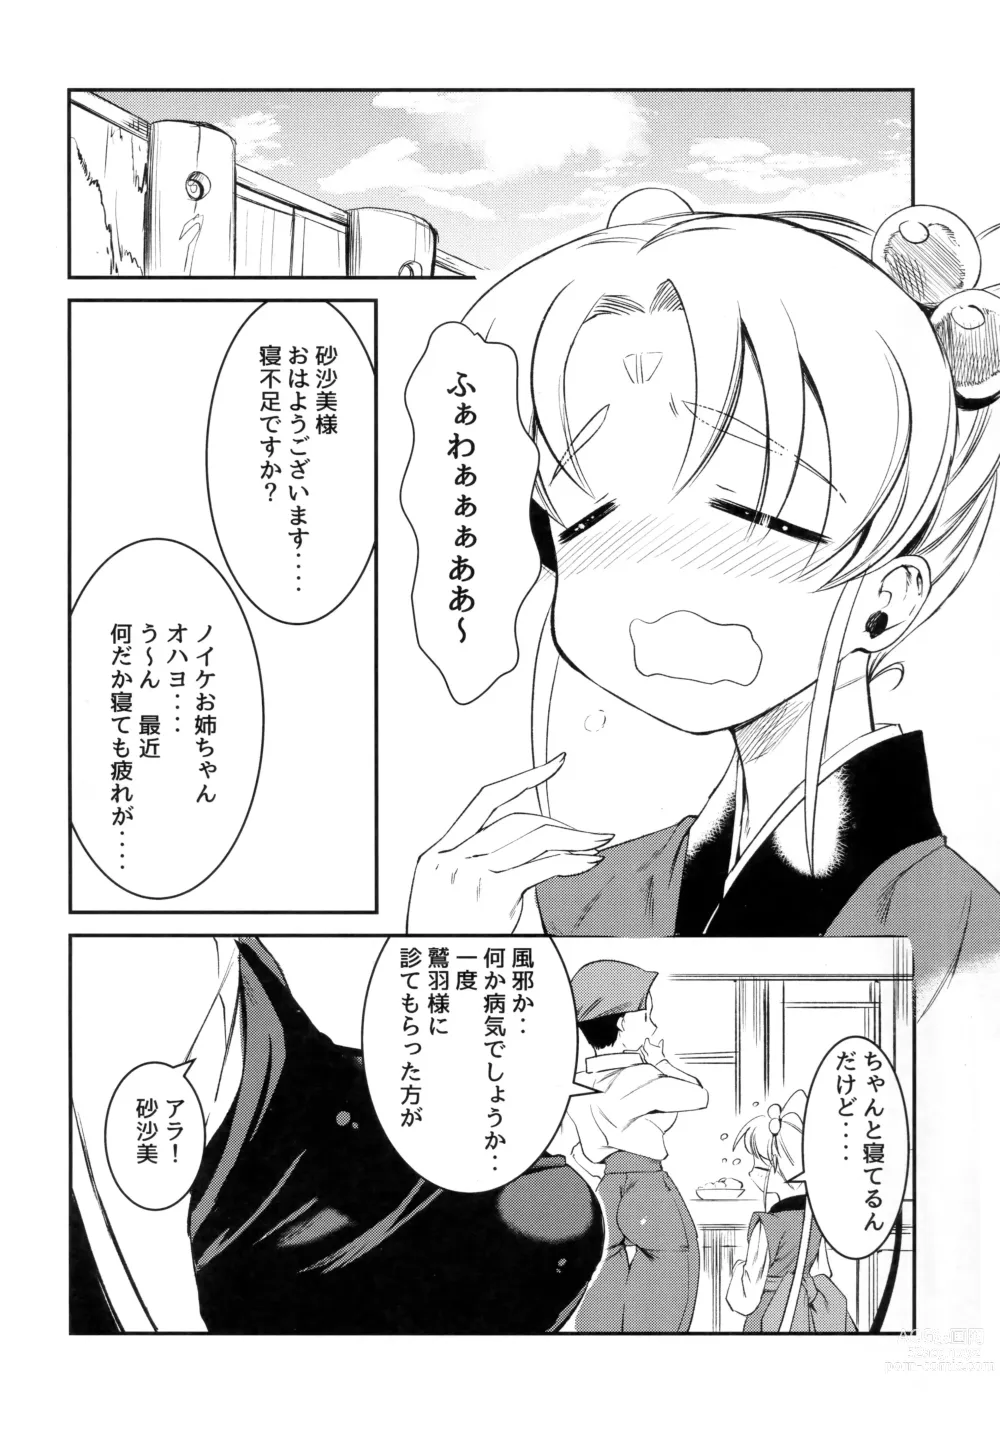 Page 7 of doujinshi Imouto Megami no Otanoshimi